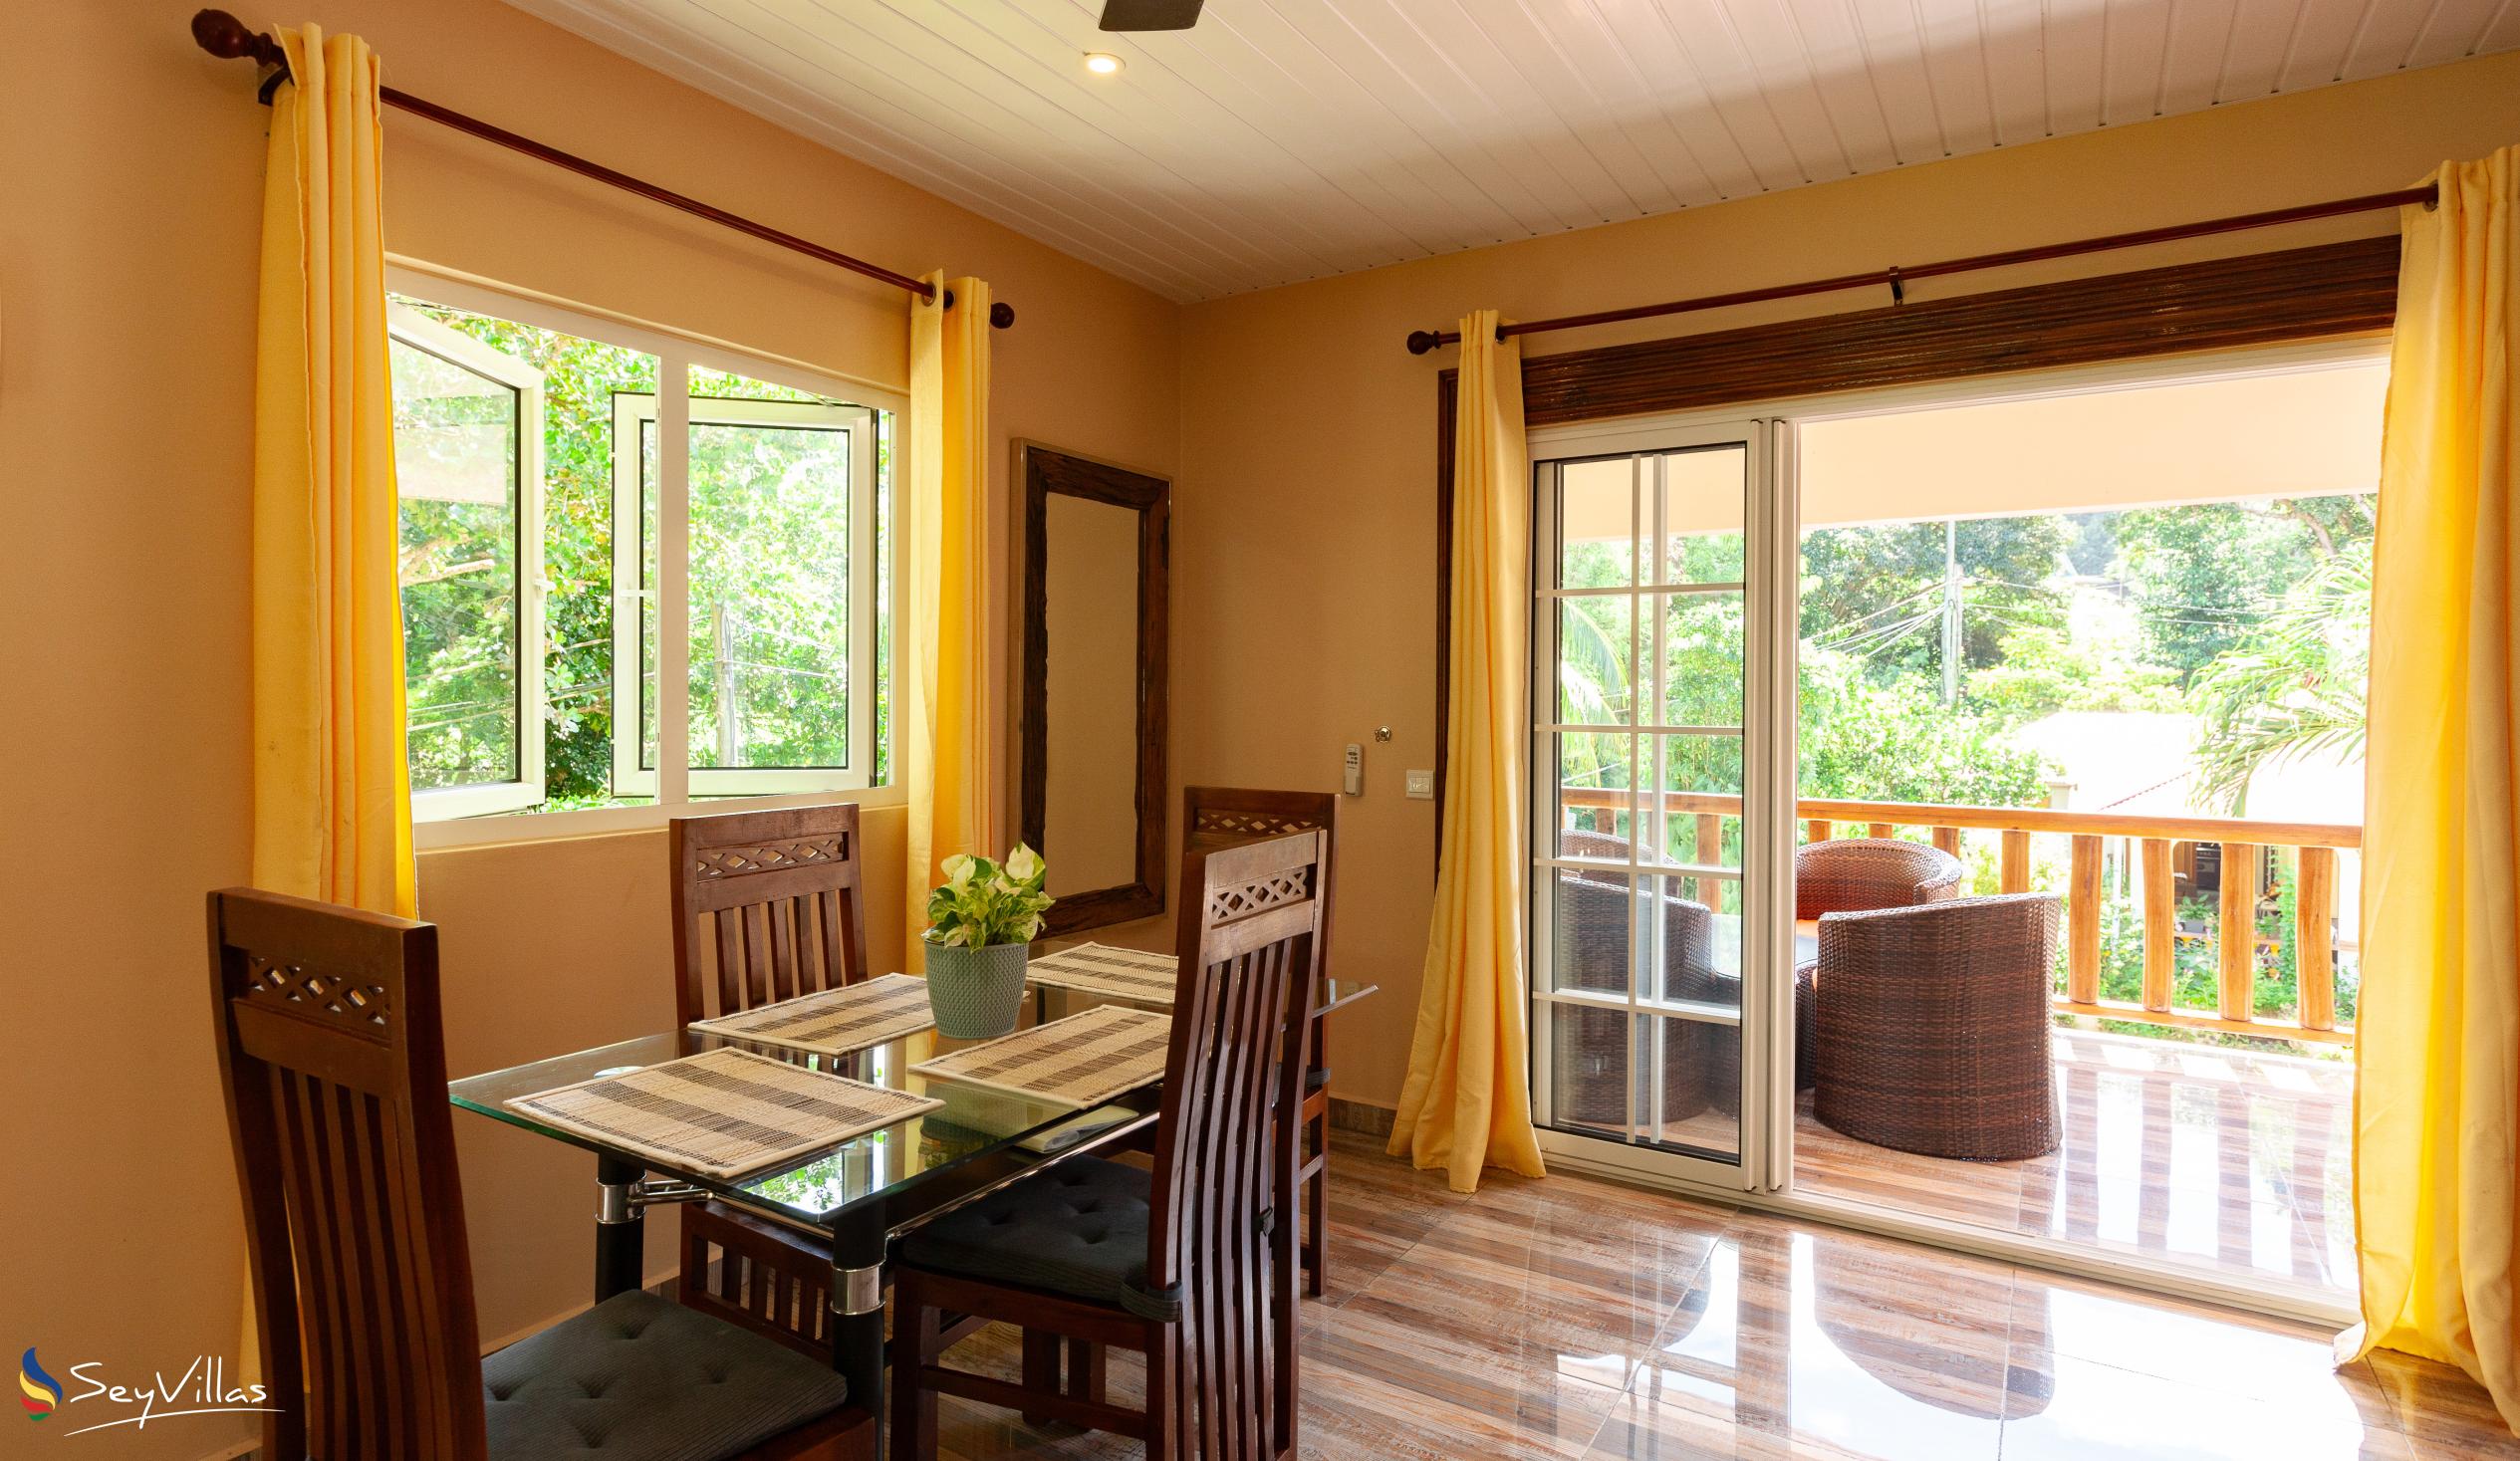 Foto 79: Chloe's Cottage - Appartement Familial de Luxe - La Digue (Seychelles)